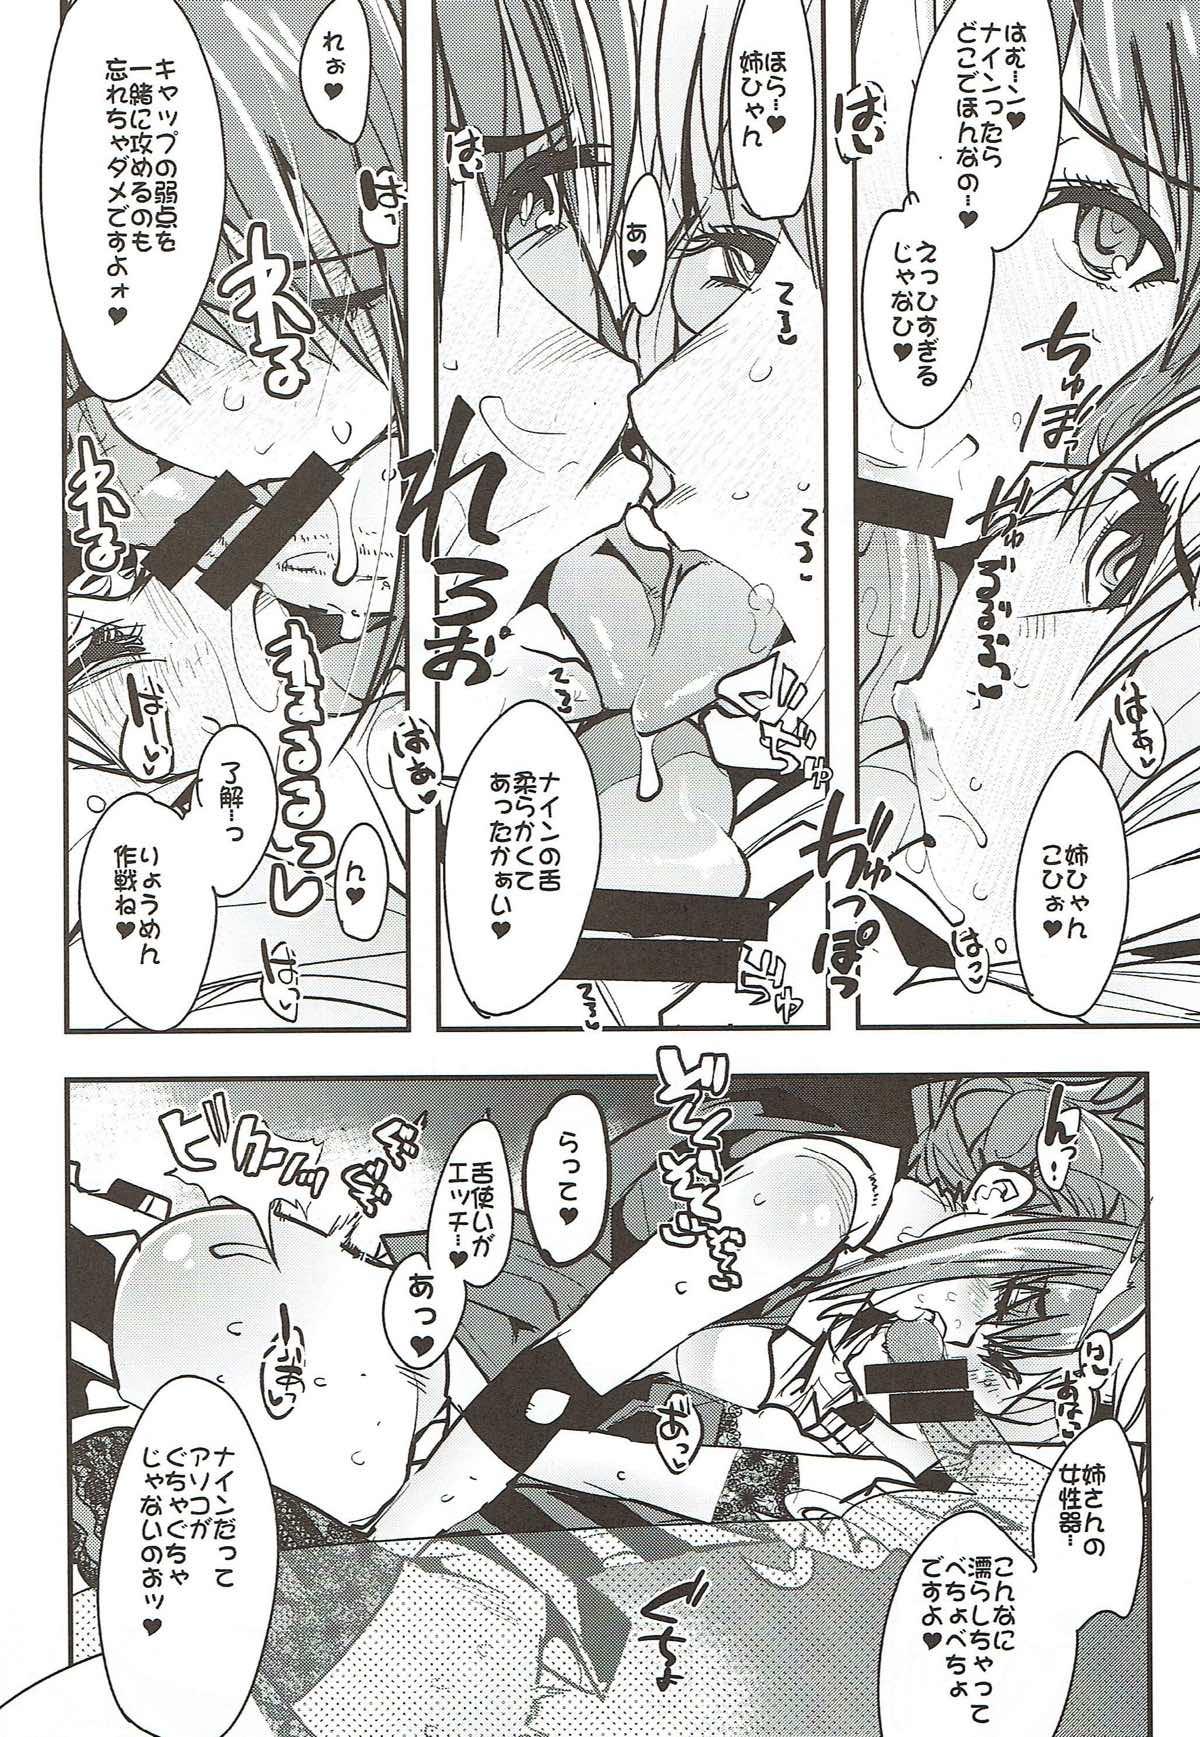 Teamskeet Boku no Watashi no Super Bobobbo Taisen VΩ - Super robot wars POV - Page 8